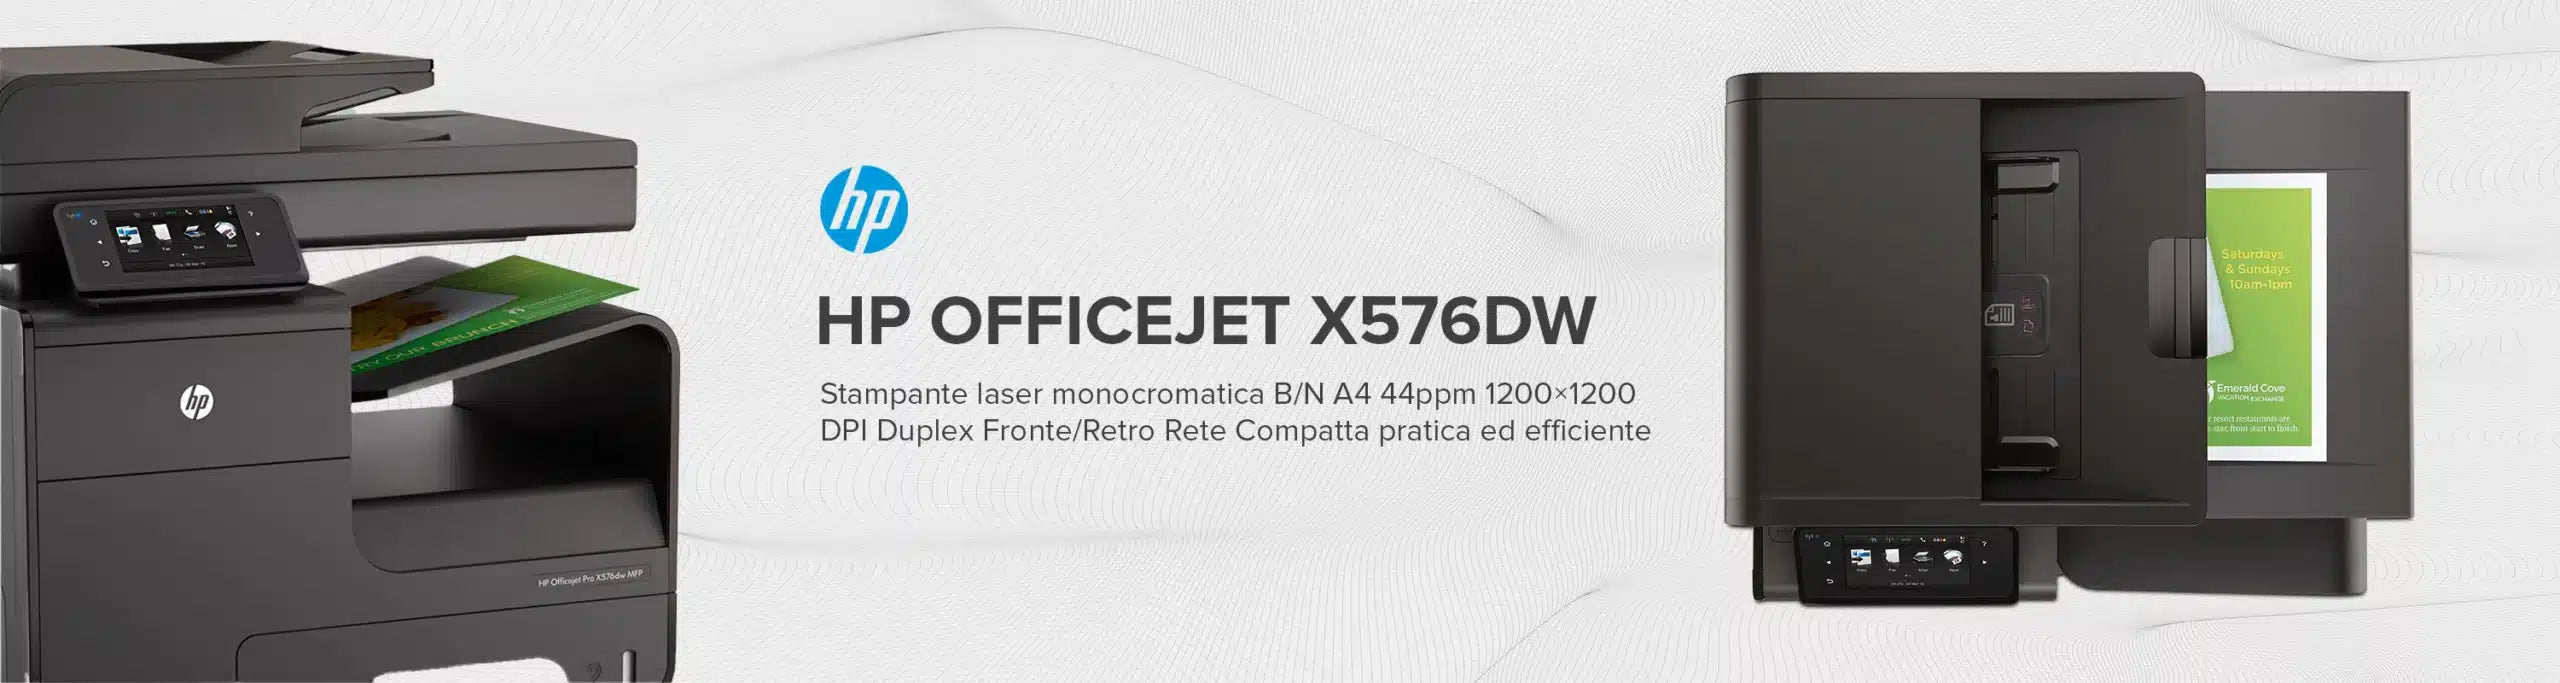 HP OfficeJet X576dw